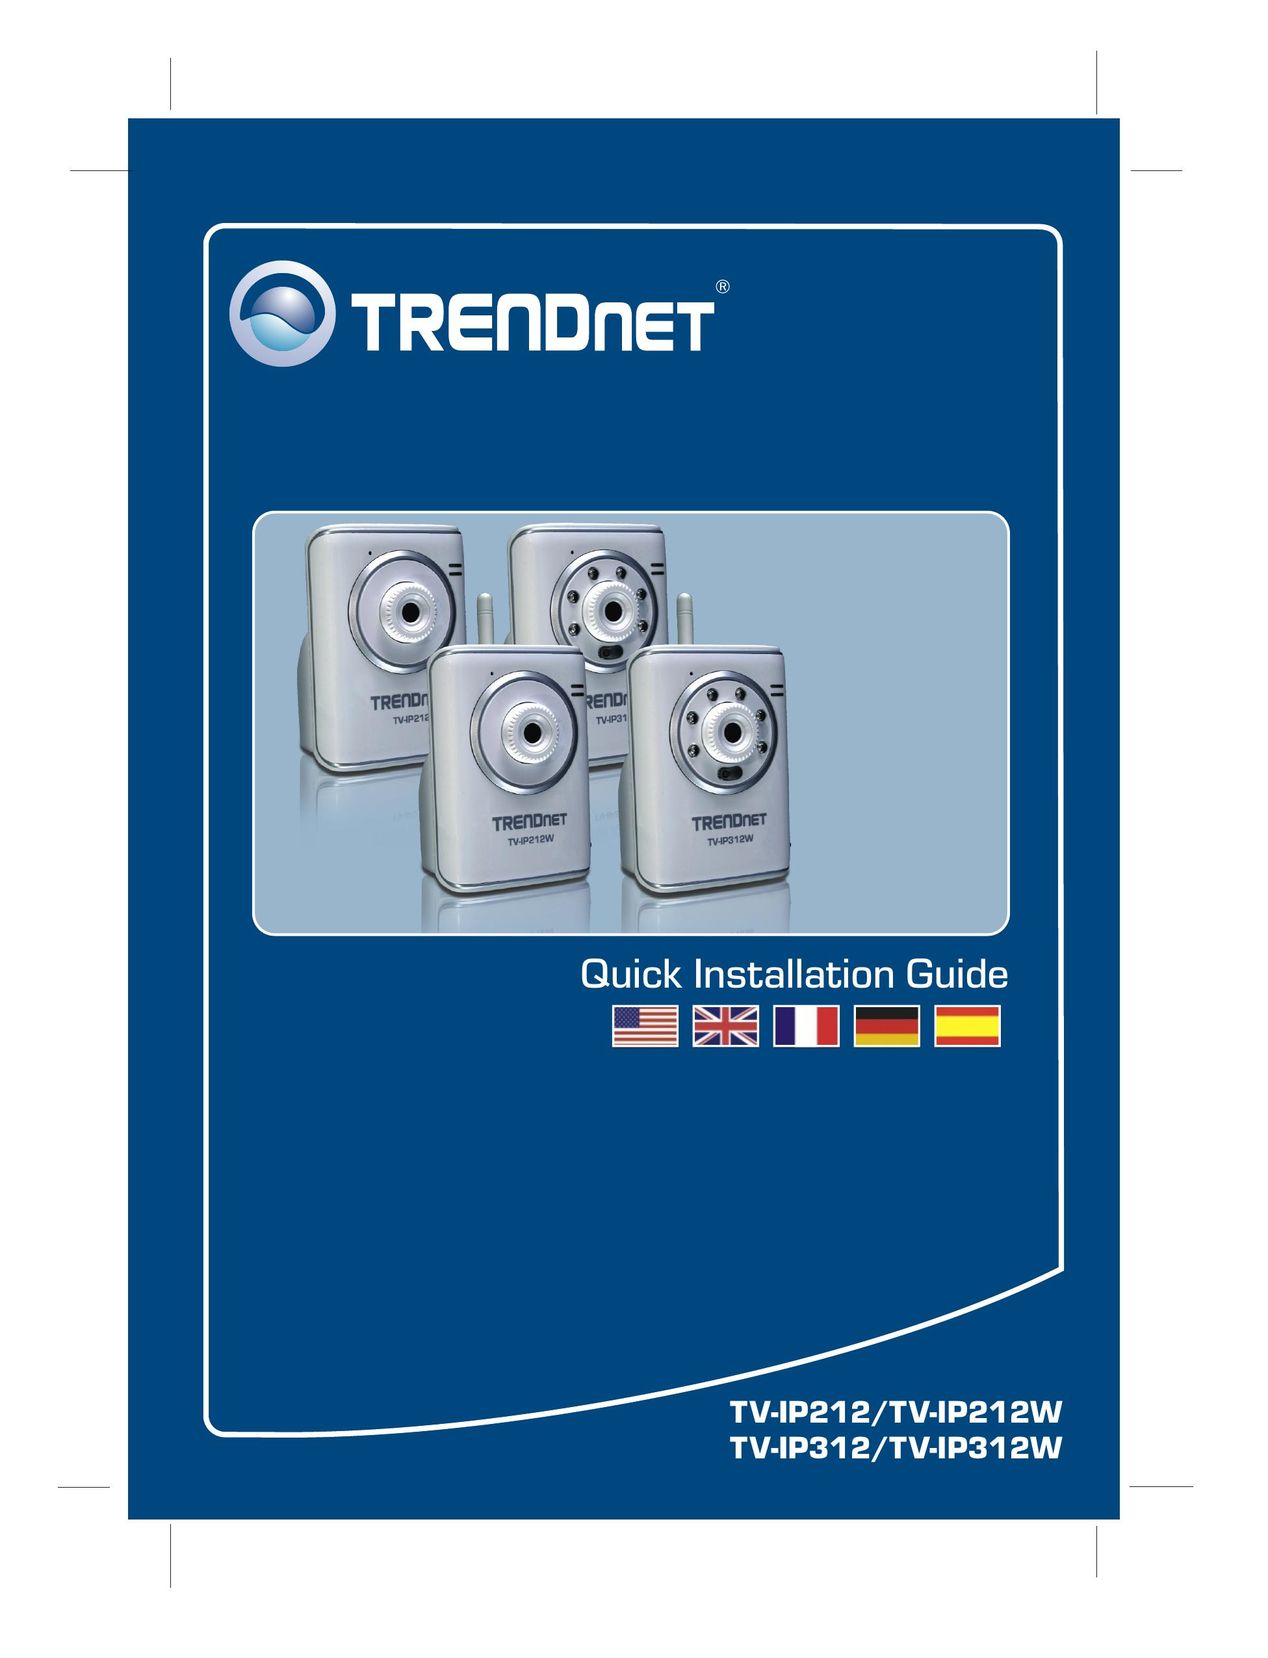 TRENDnet TV-IP312 Computer Accessories User Manual